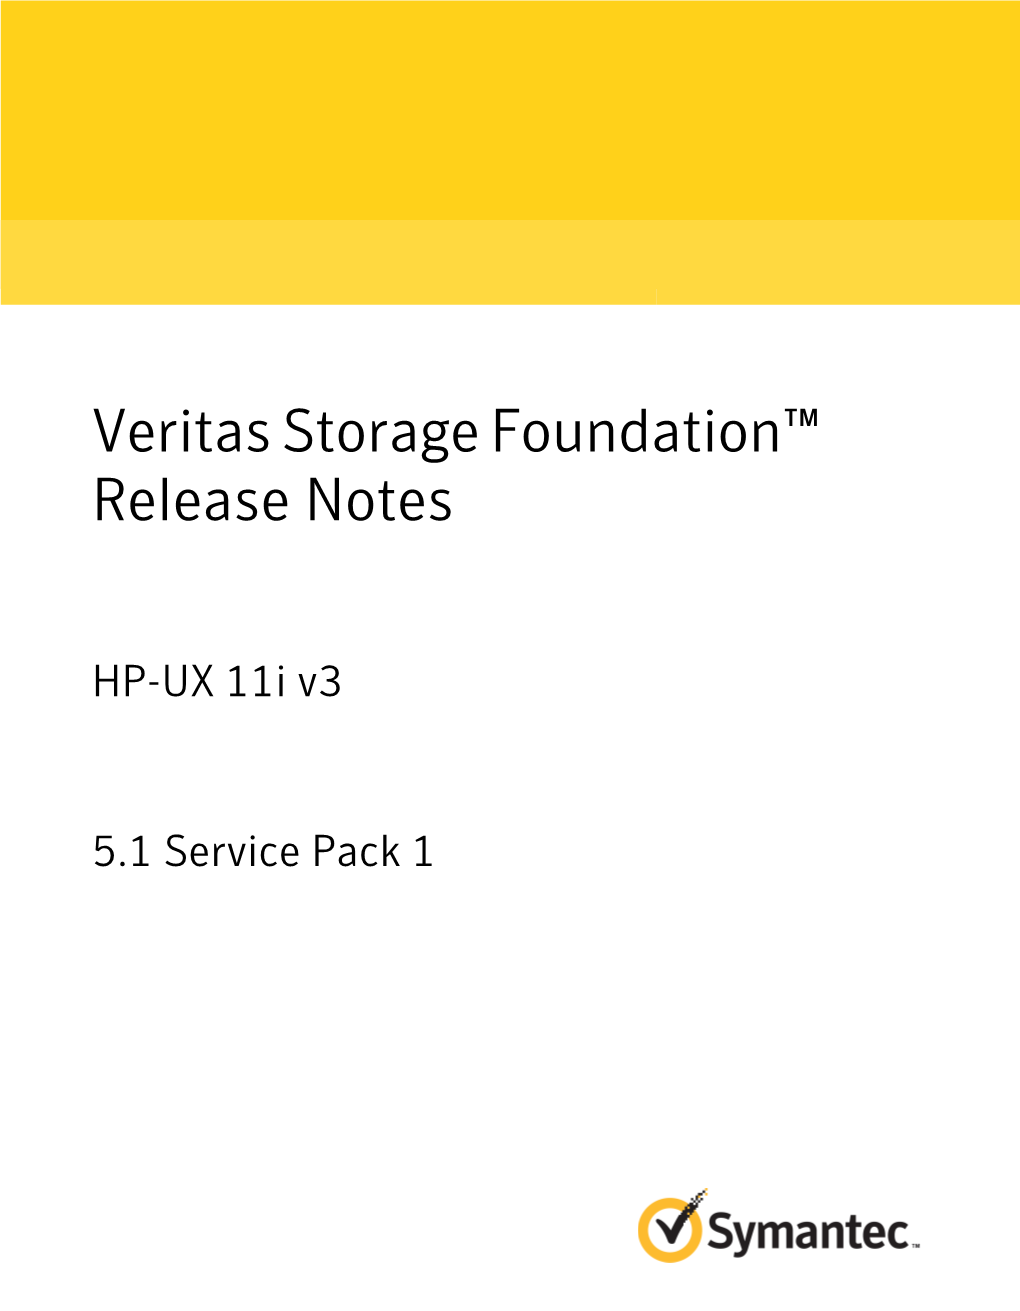 Veritas Storage Foundation™ Release Notes: HP-UX 11I V3